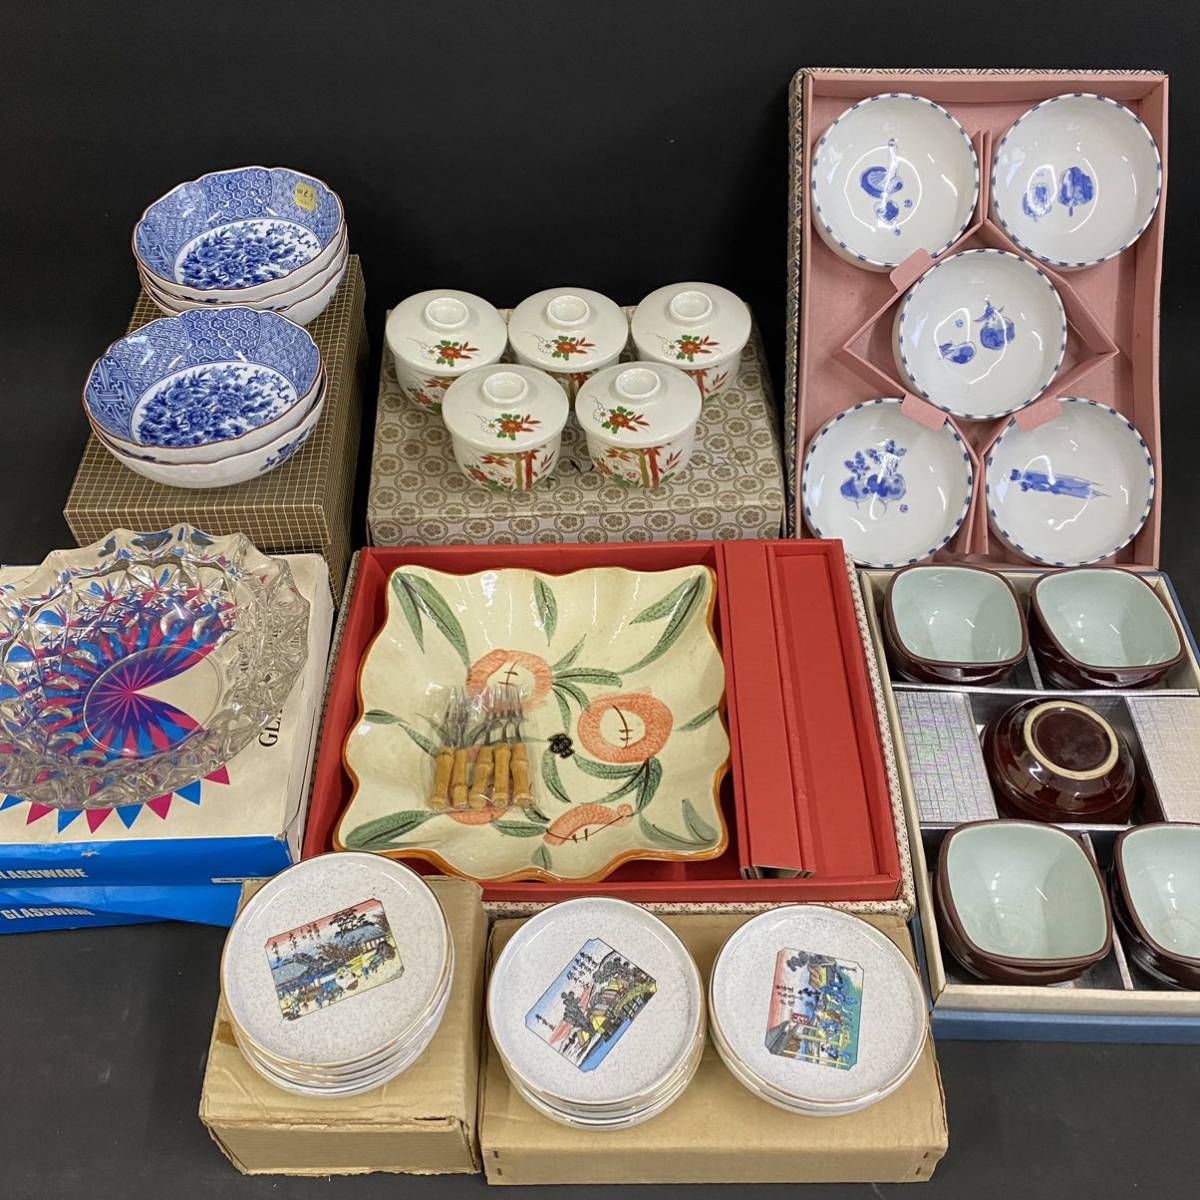 K2547 [Неиспользованные предметы, коллекция посуды в коробочках] Маленькая миска Рюхо, Японская посуда, ручной росписью, с крышкой, разрезанная стеклянная тарелка, текущий элемент, античный, коллекция, разные товары, другие